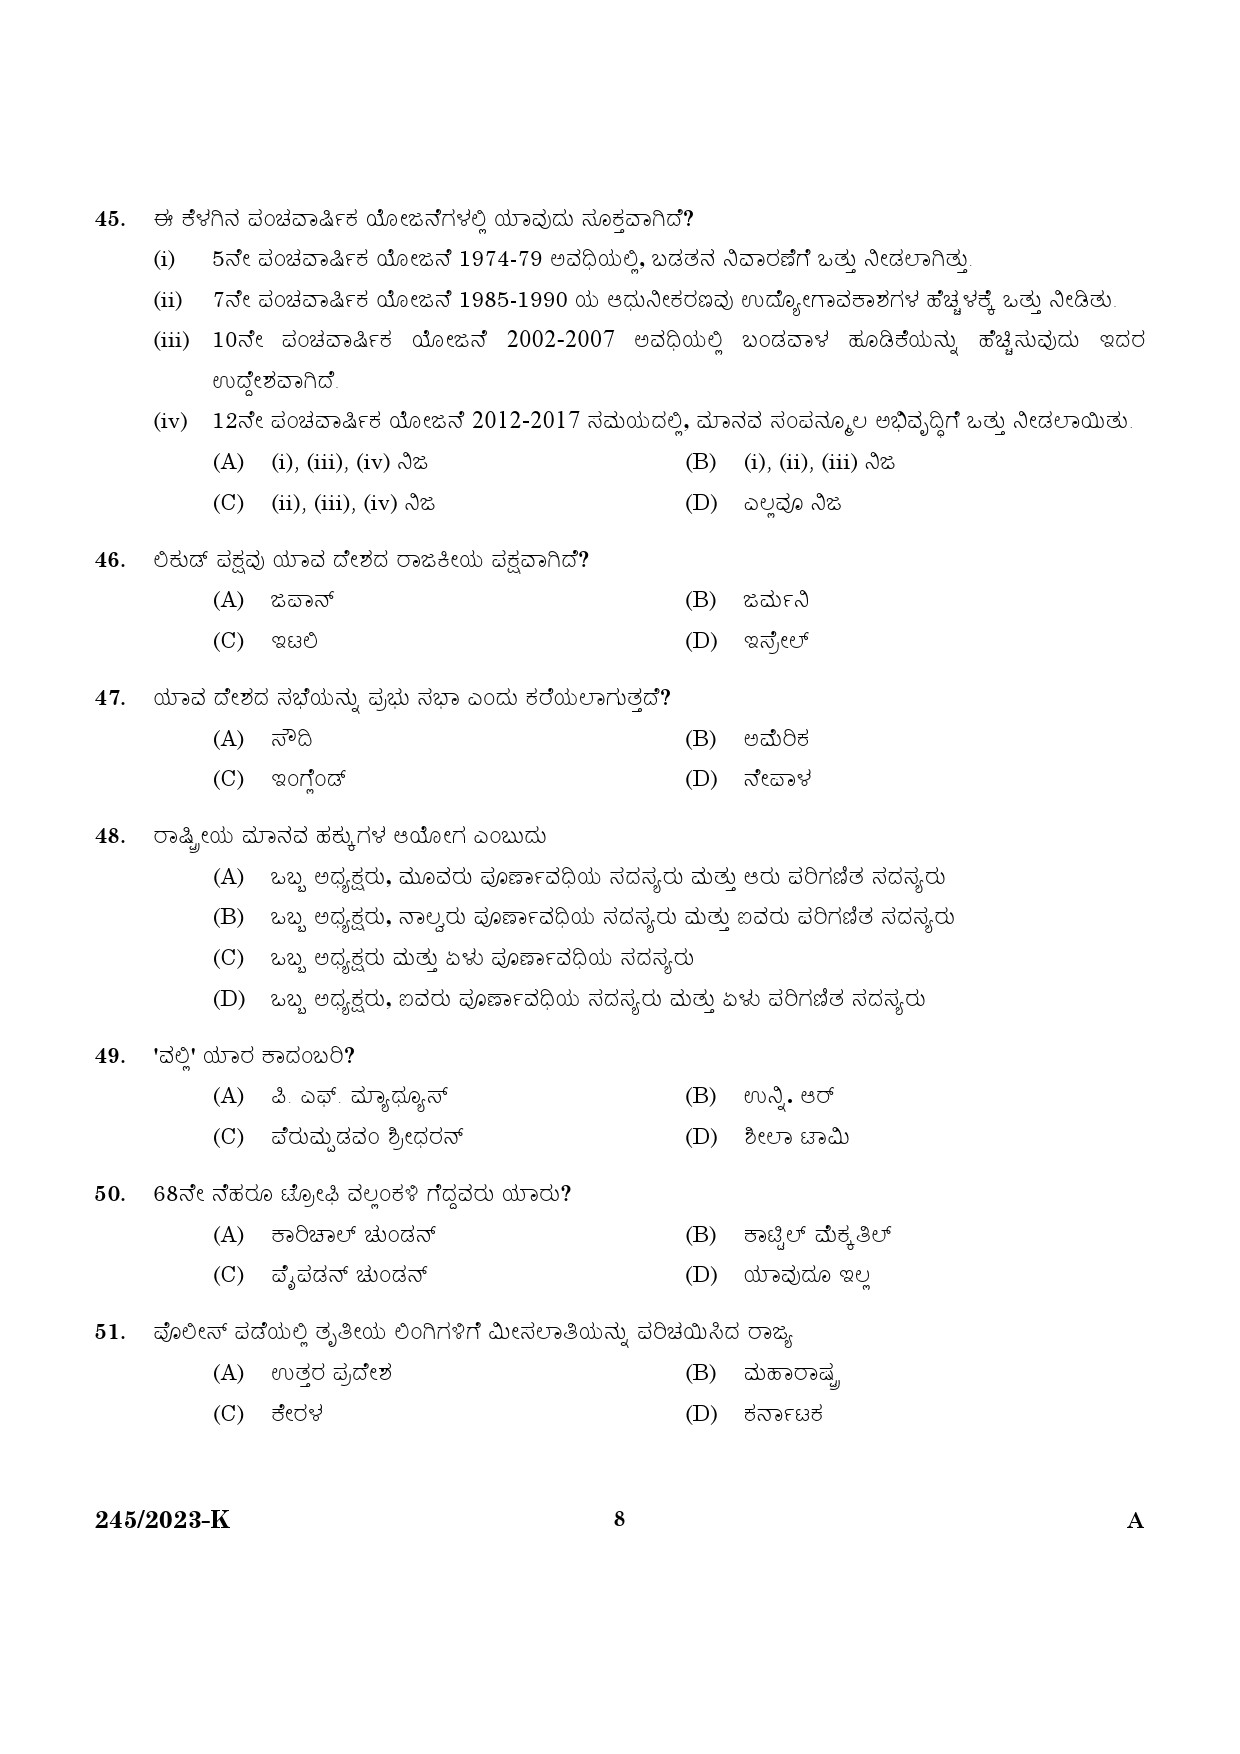 KPSC LGS Kannada Exam 2023 Code 2452023 K 6